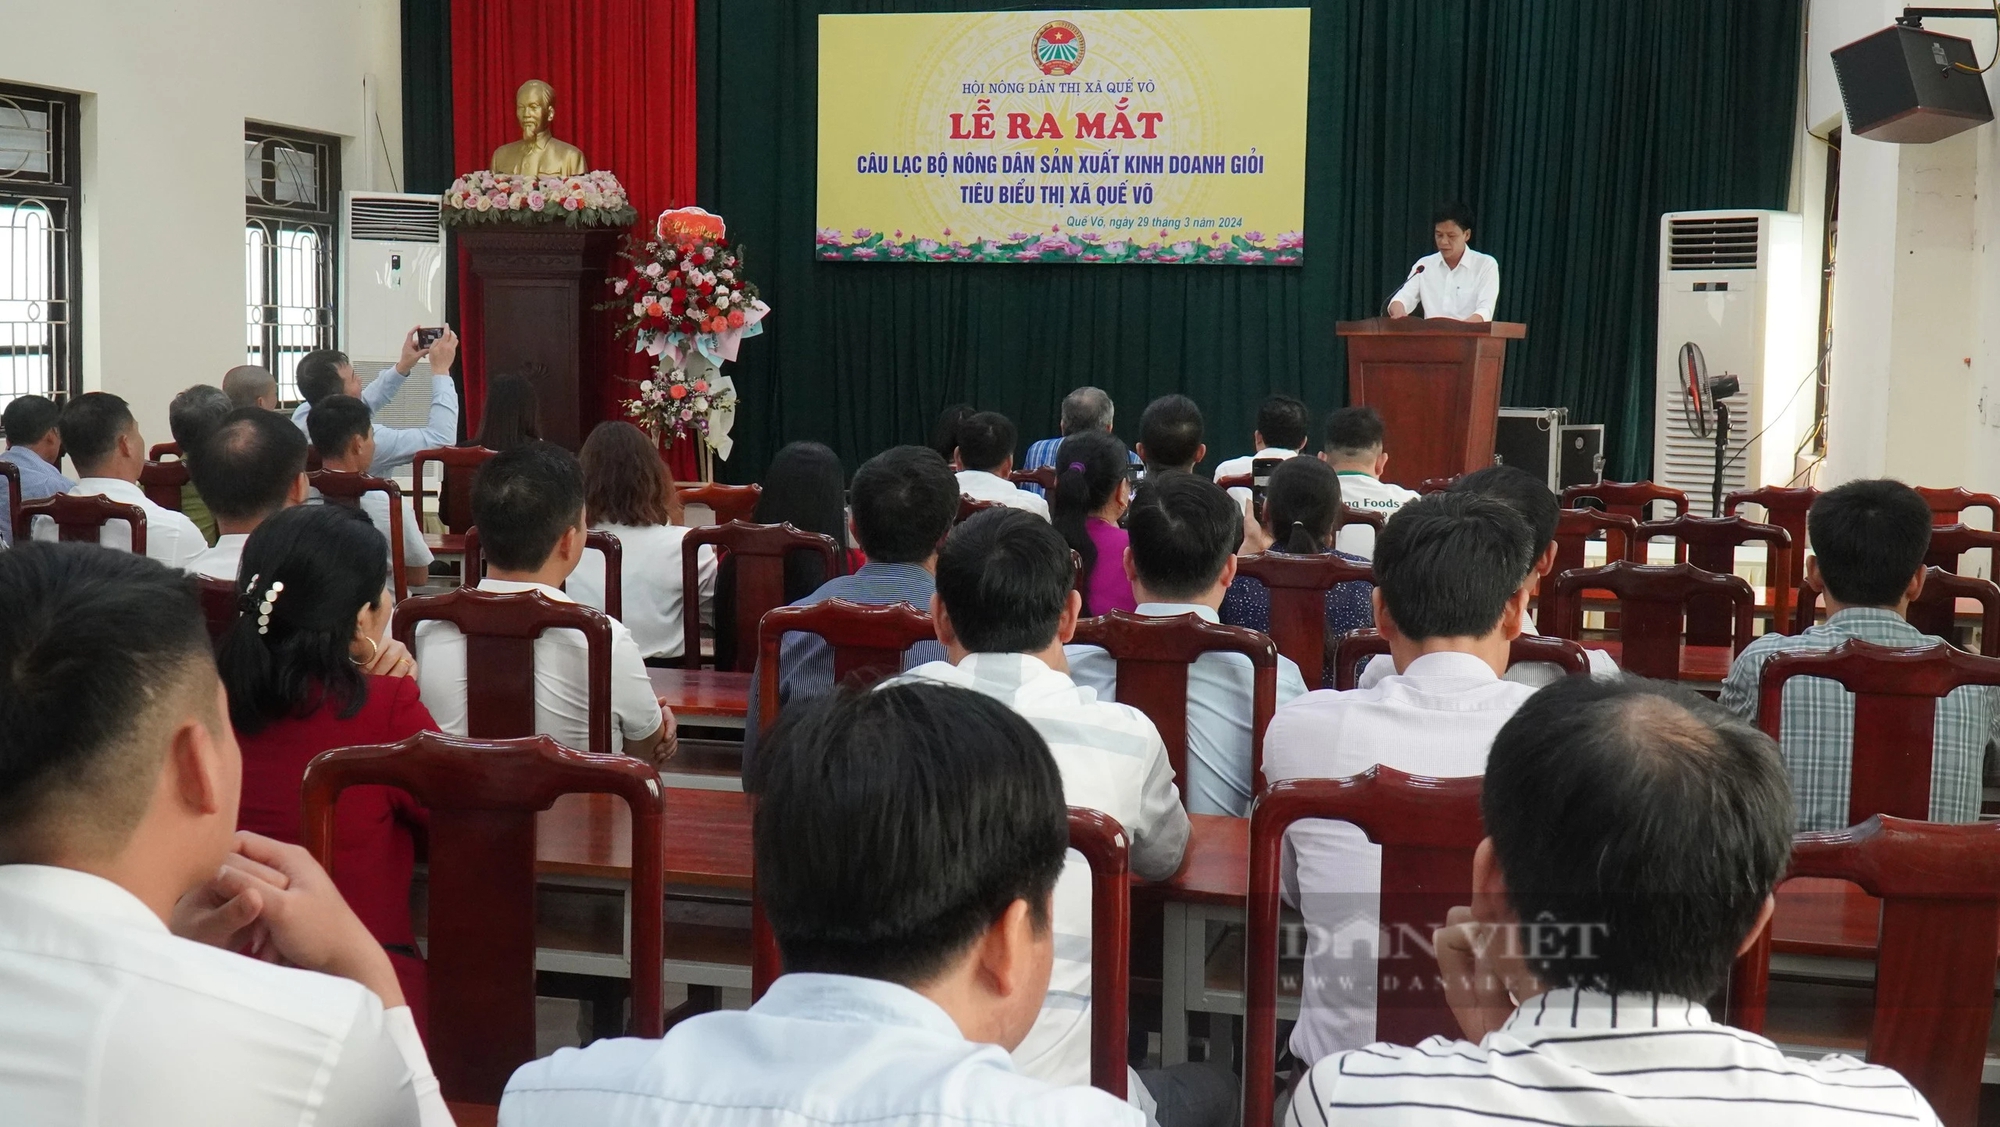 Hội Nông dân thị xã Quế Võ ra mắt câu lạc bộ nông dân sản xuất kinh doanh giỏi tiêu biểu- Ảnh 1.